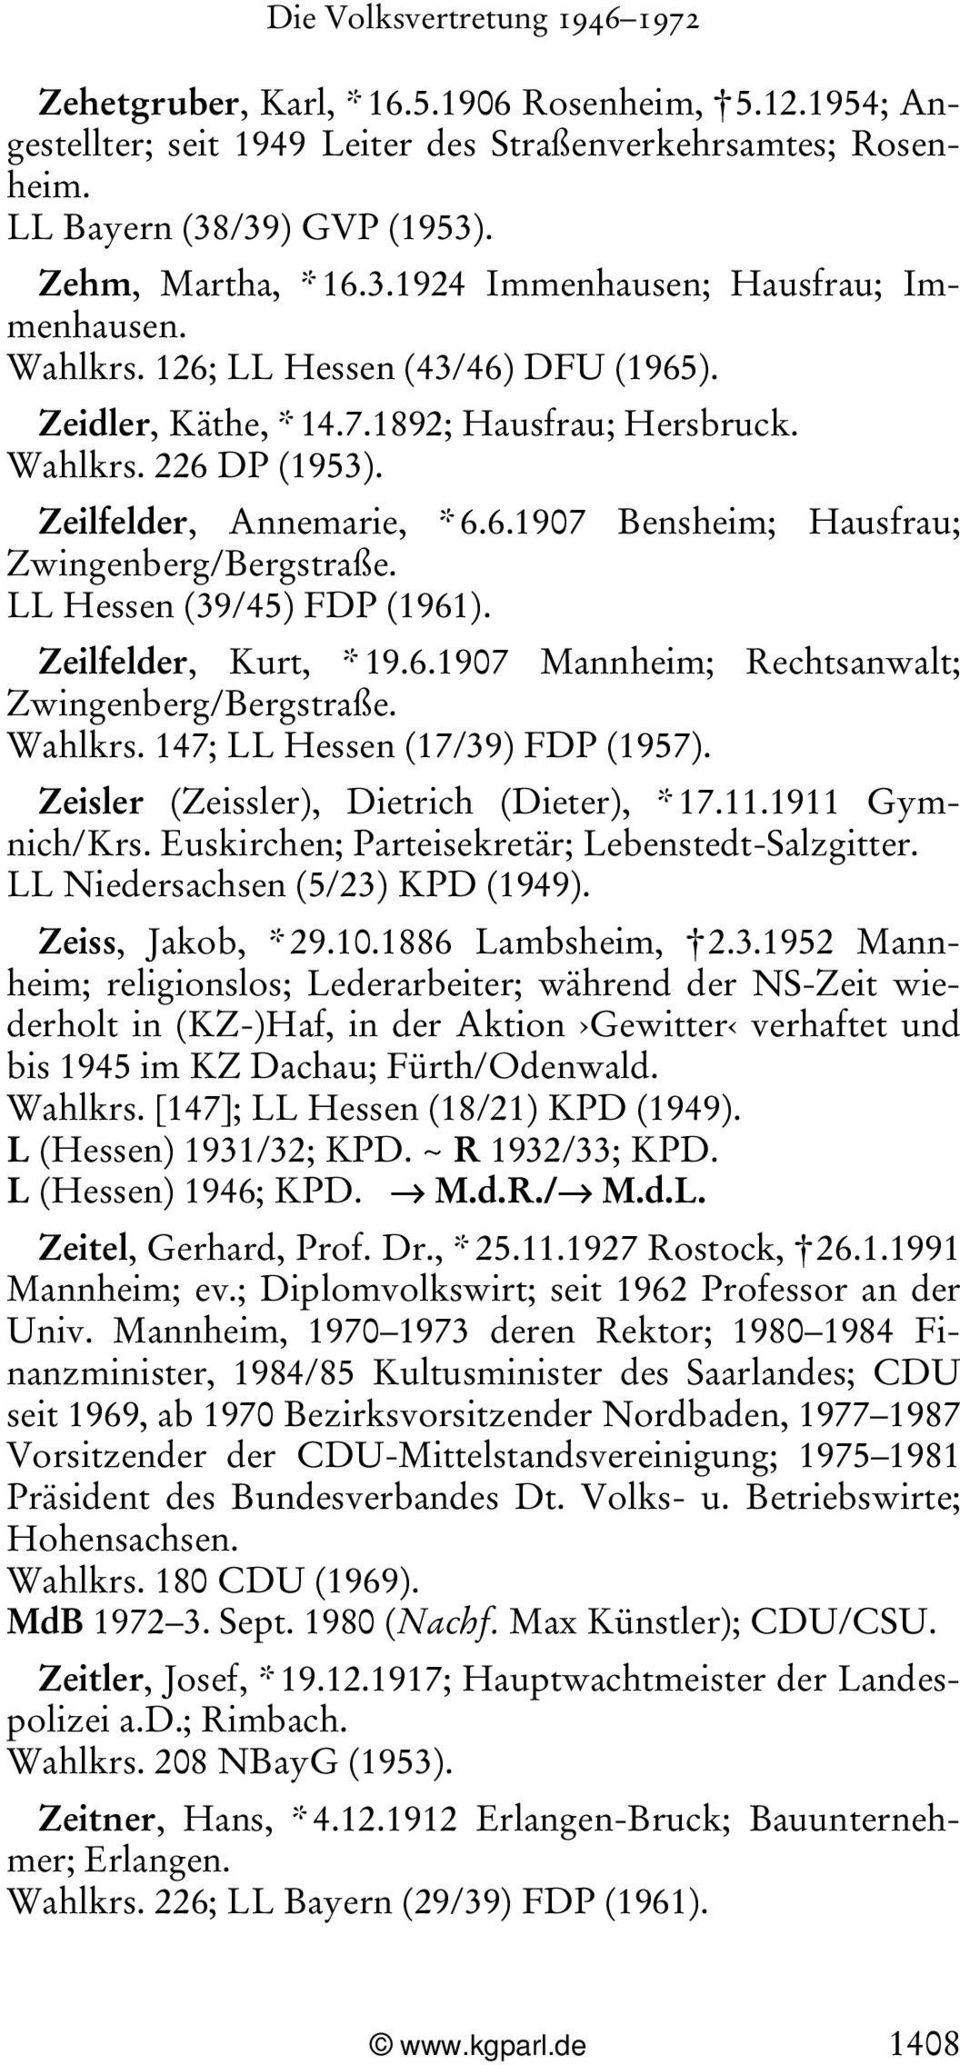 LL Hessen (39/45) FDP (1961). Zeilfelder, Kurt, * 19.6.1907 Mannheim; Rechtsanwalt; Zwingenberg/Bergstraße. Wahlkrs. 147; LL Hessen (17/39) FDP (1957). Zeisler (Zeissler), Dietrich (Dieter), * 17.11.